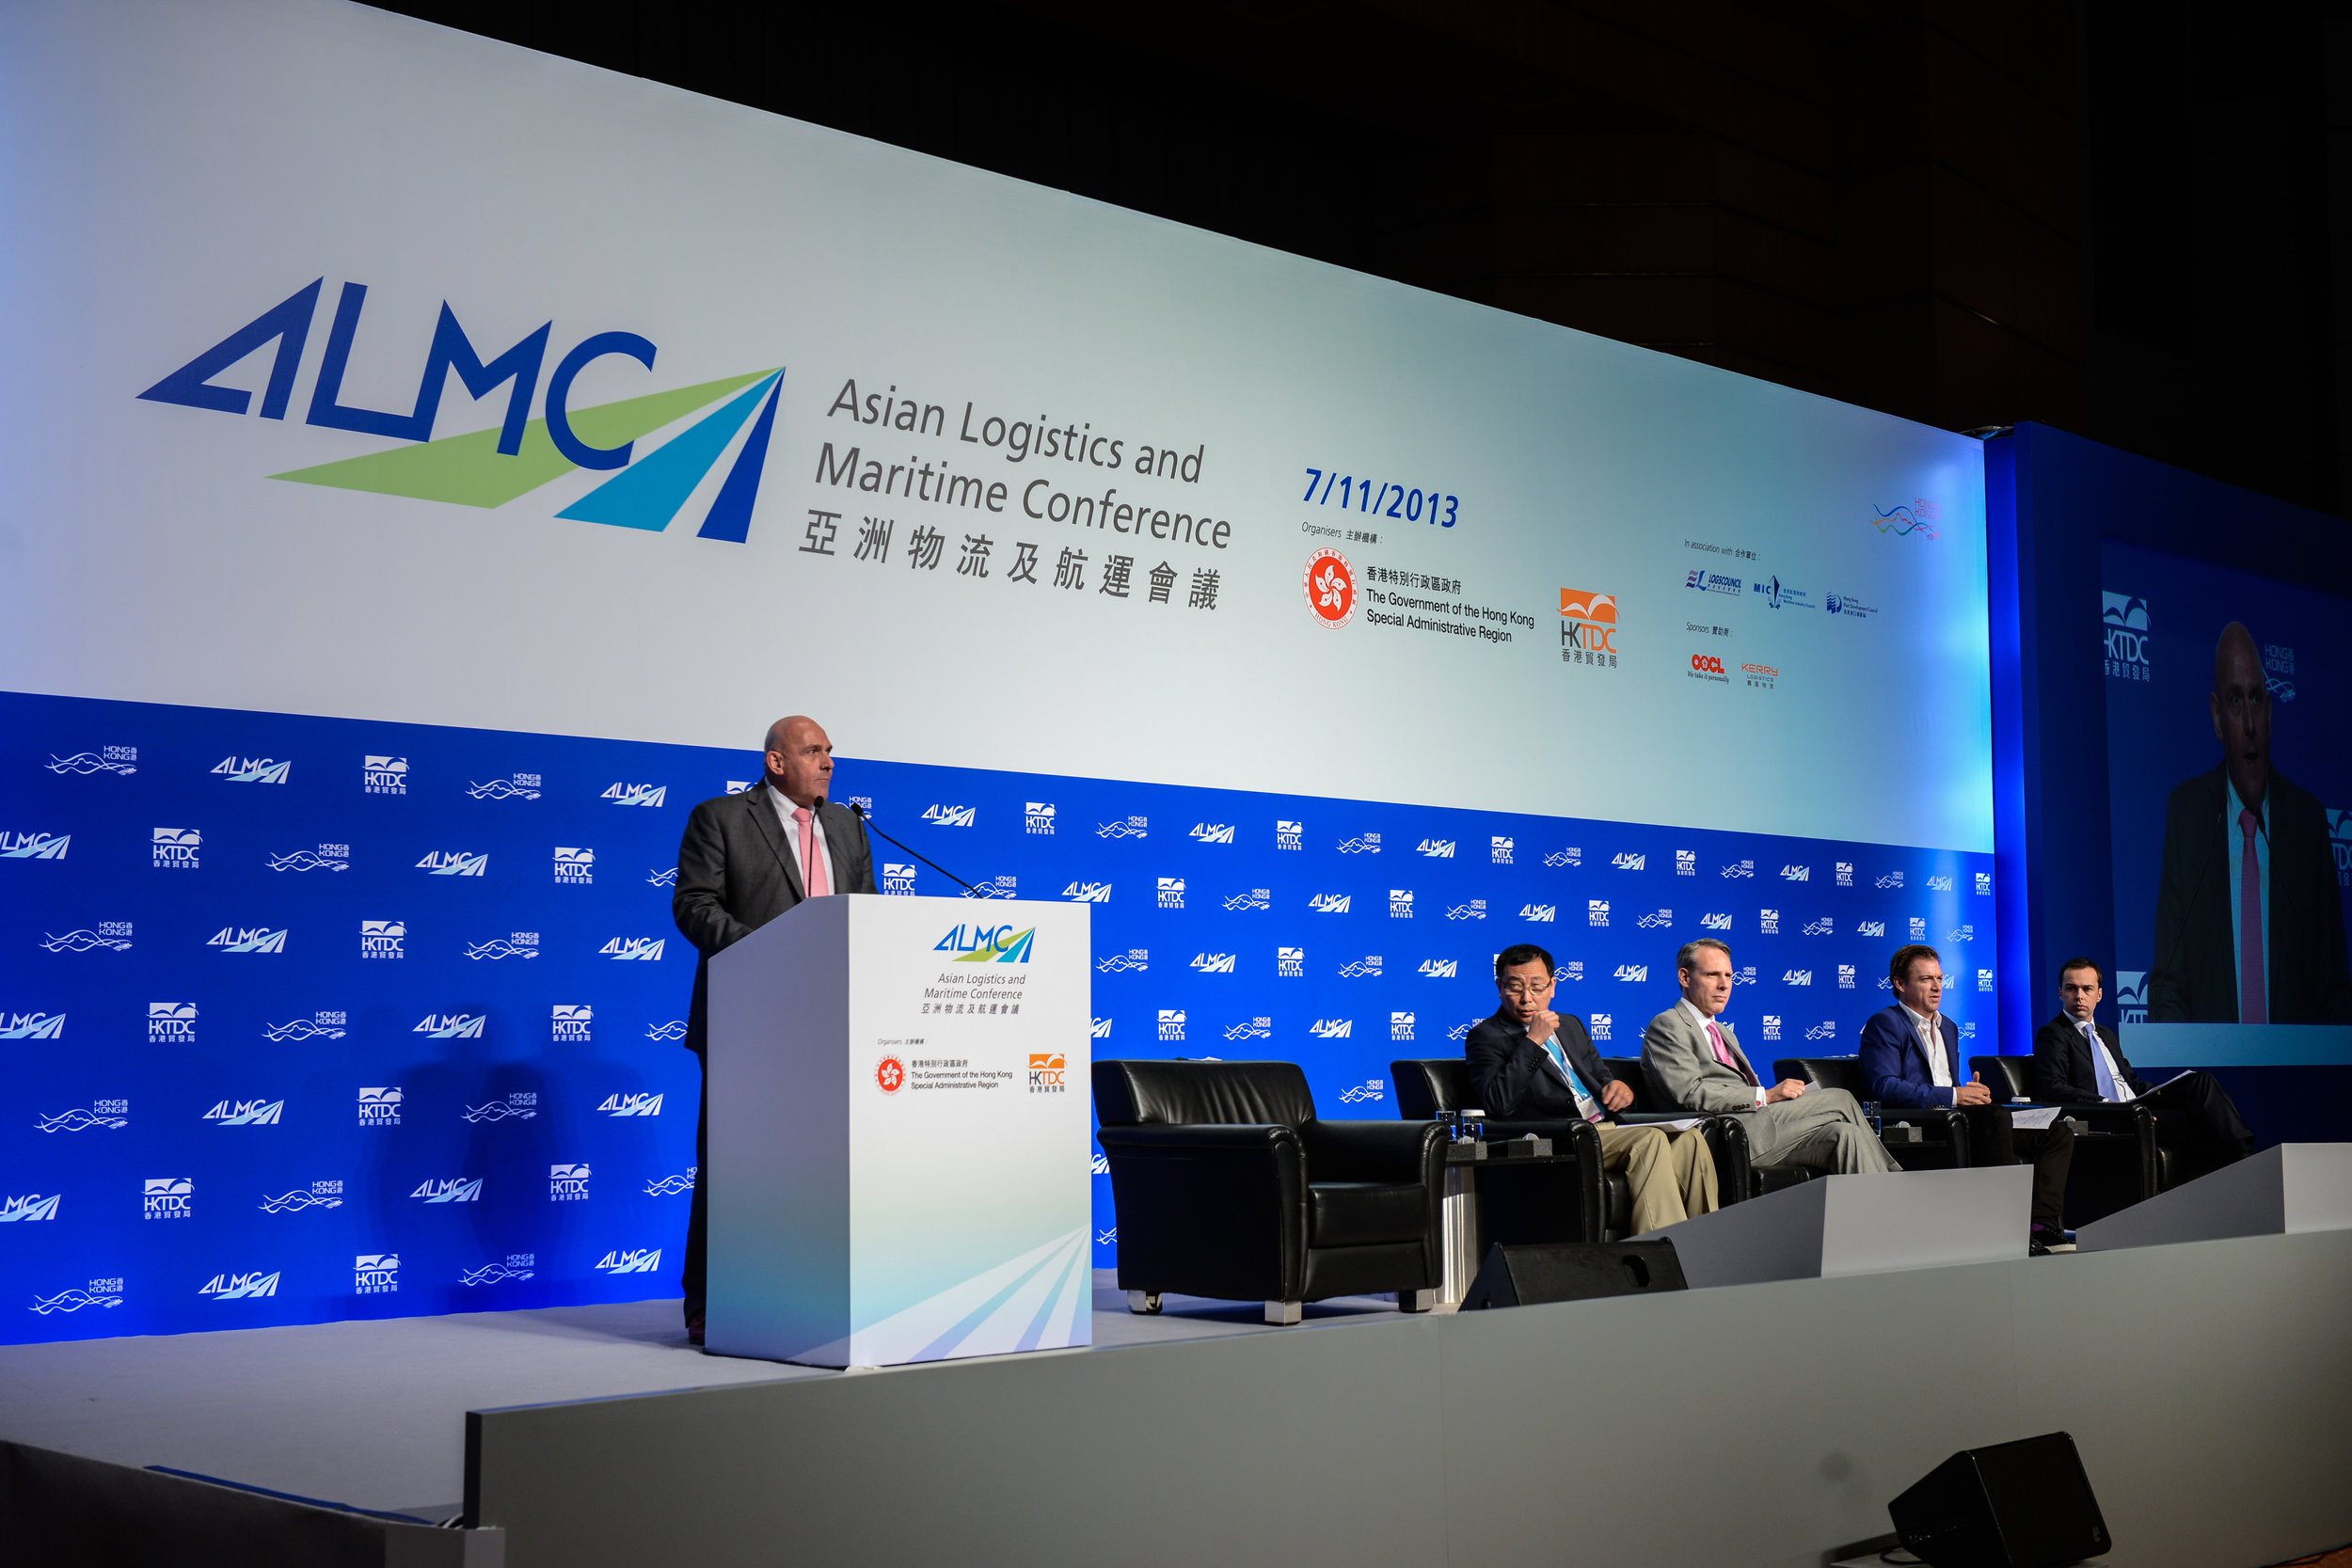 2013-11 HKG ALMC Conference-HKTDC@HKCEC (3).jpg